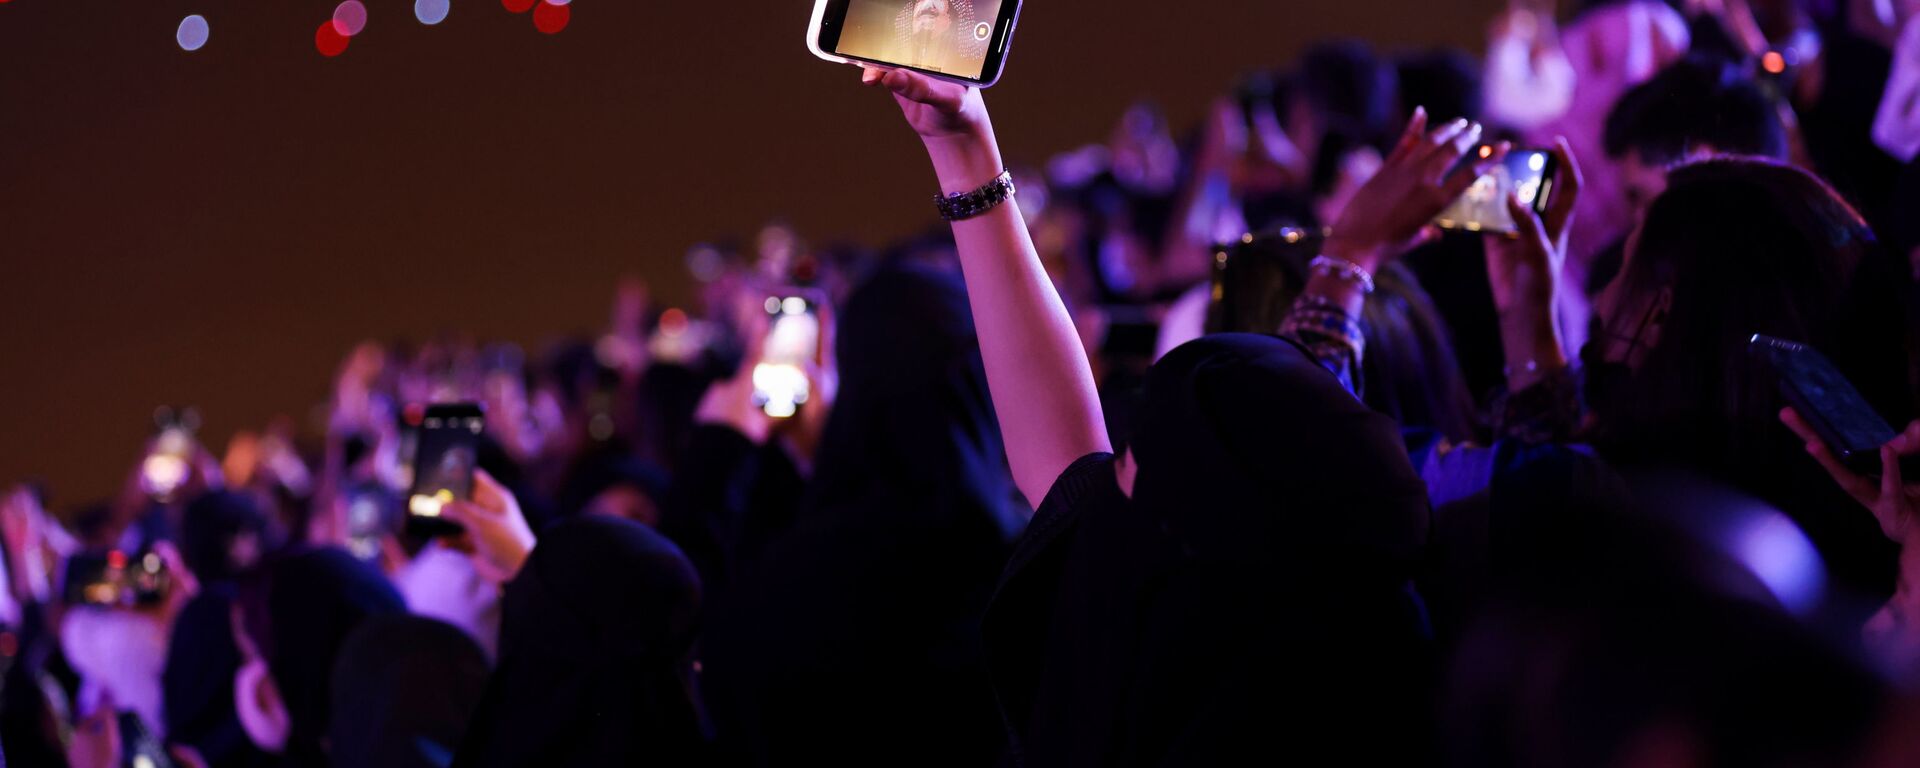 امرأة ضمن الجمهور تلتقط صورة في حفل افتتاح مهرجان موسم الرياض في الرياض، المملكة العربية السعودية، 20 أكتوبر 2021. - سبوتنيك عربي, 1920, 17.04.2022